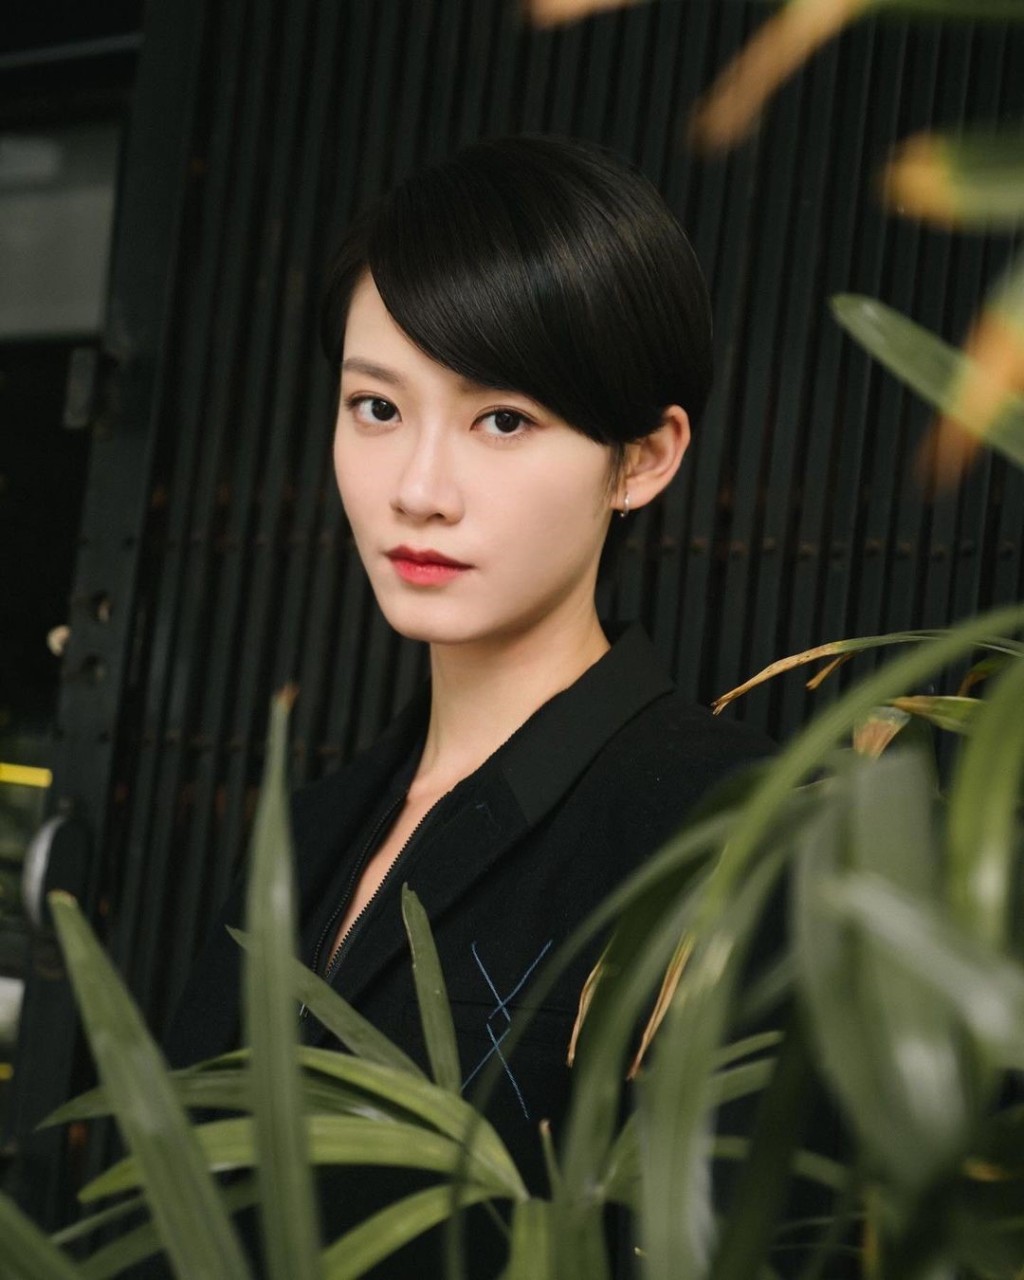 電影版「山本未來」一角由金像獎女配角廖子妤演出。